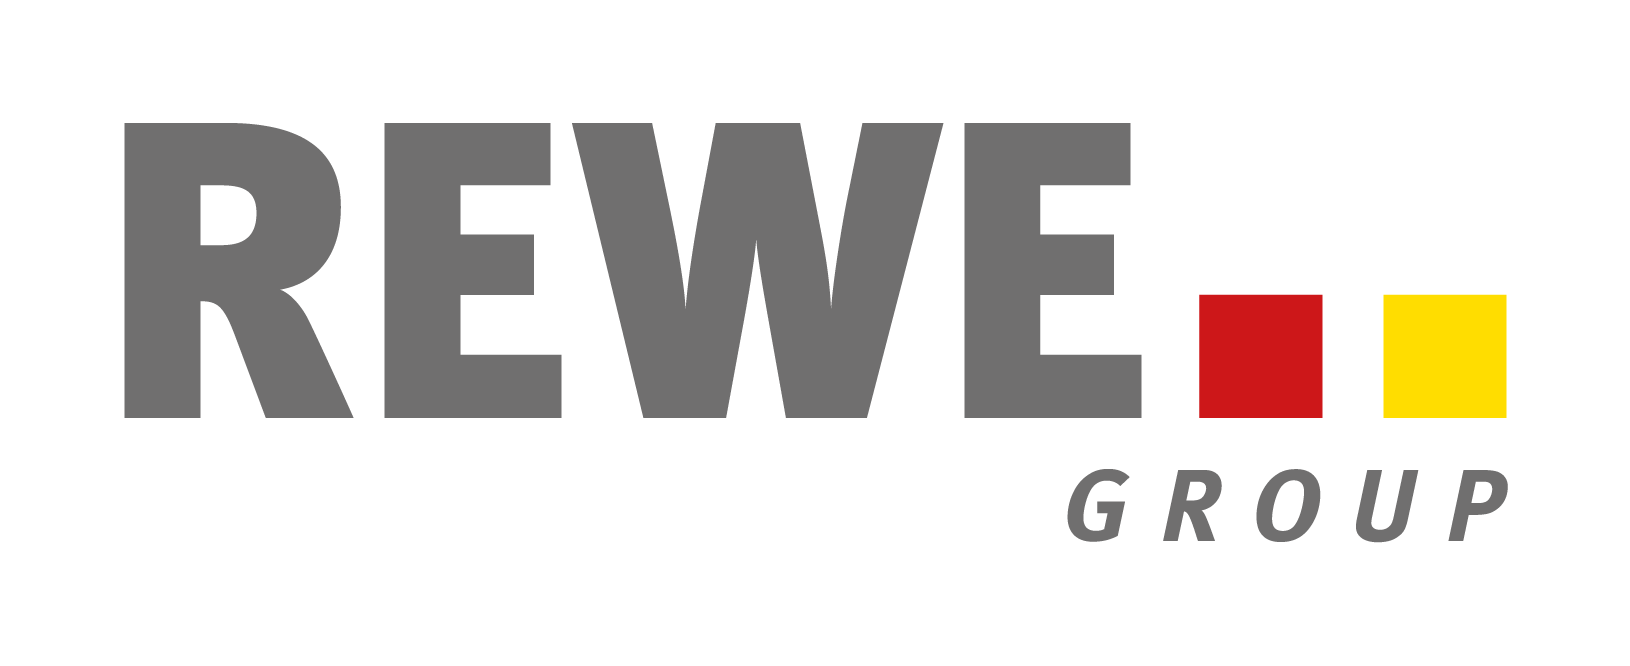 REWE Group beheert mandaten in minuten